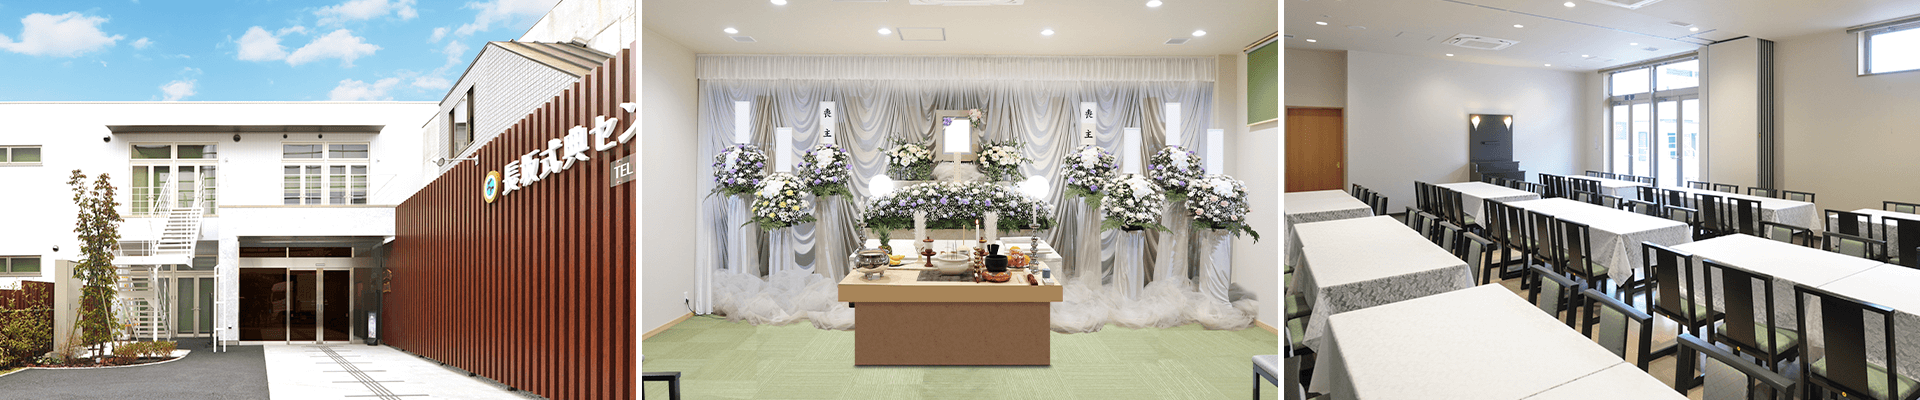 葬儀・葬式・家族葬なら16.5万円からできる長坂式典センター 清瀬市の葬儀場一覧